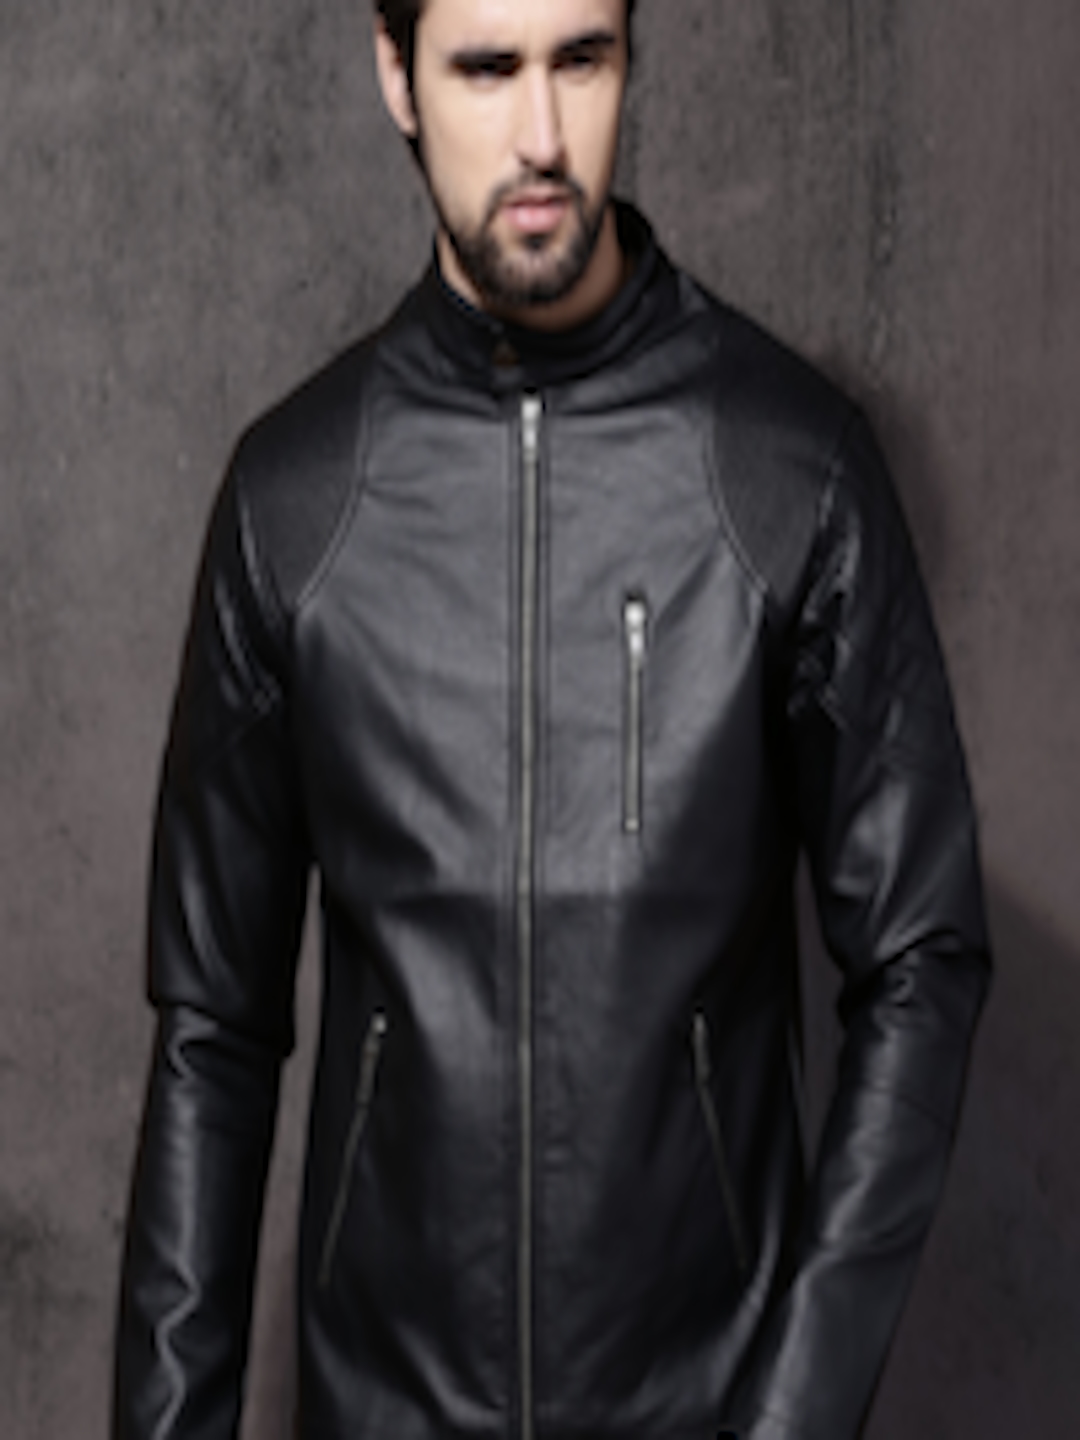 Buy Roadster Men Black Solid Biker Jacket - Jackets for Men 1875819 ...